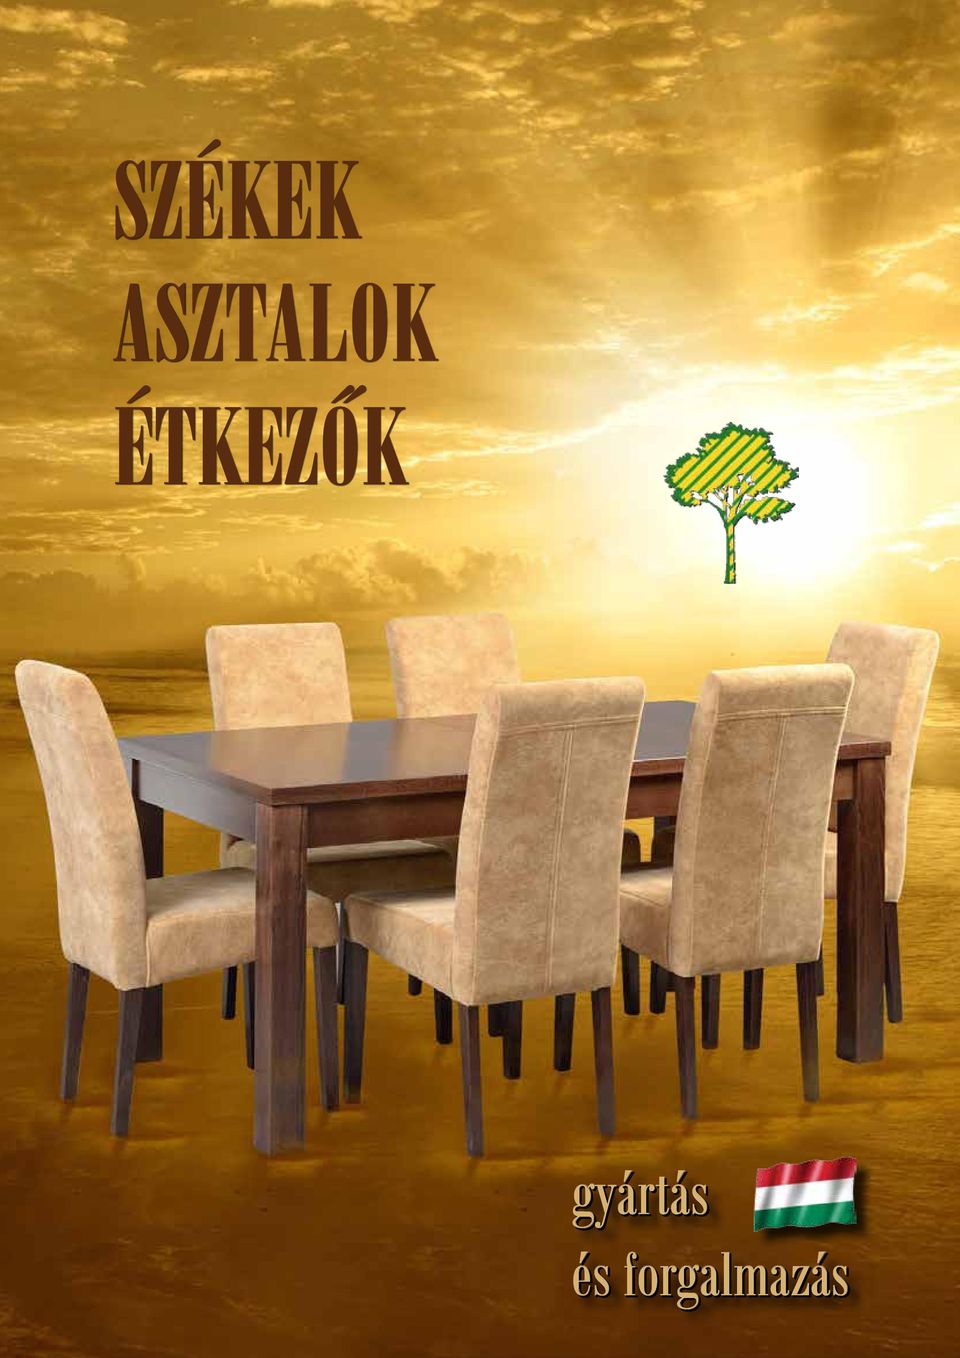 Székek asztalok étkezôk - PDF Free Download